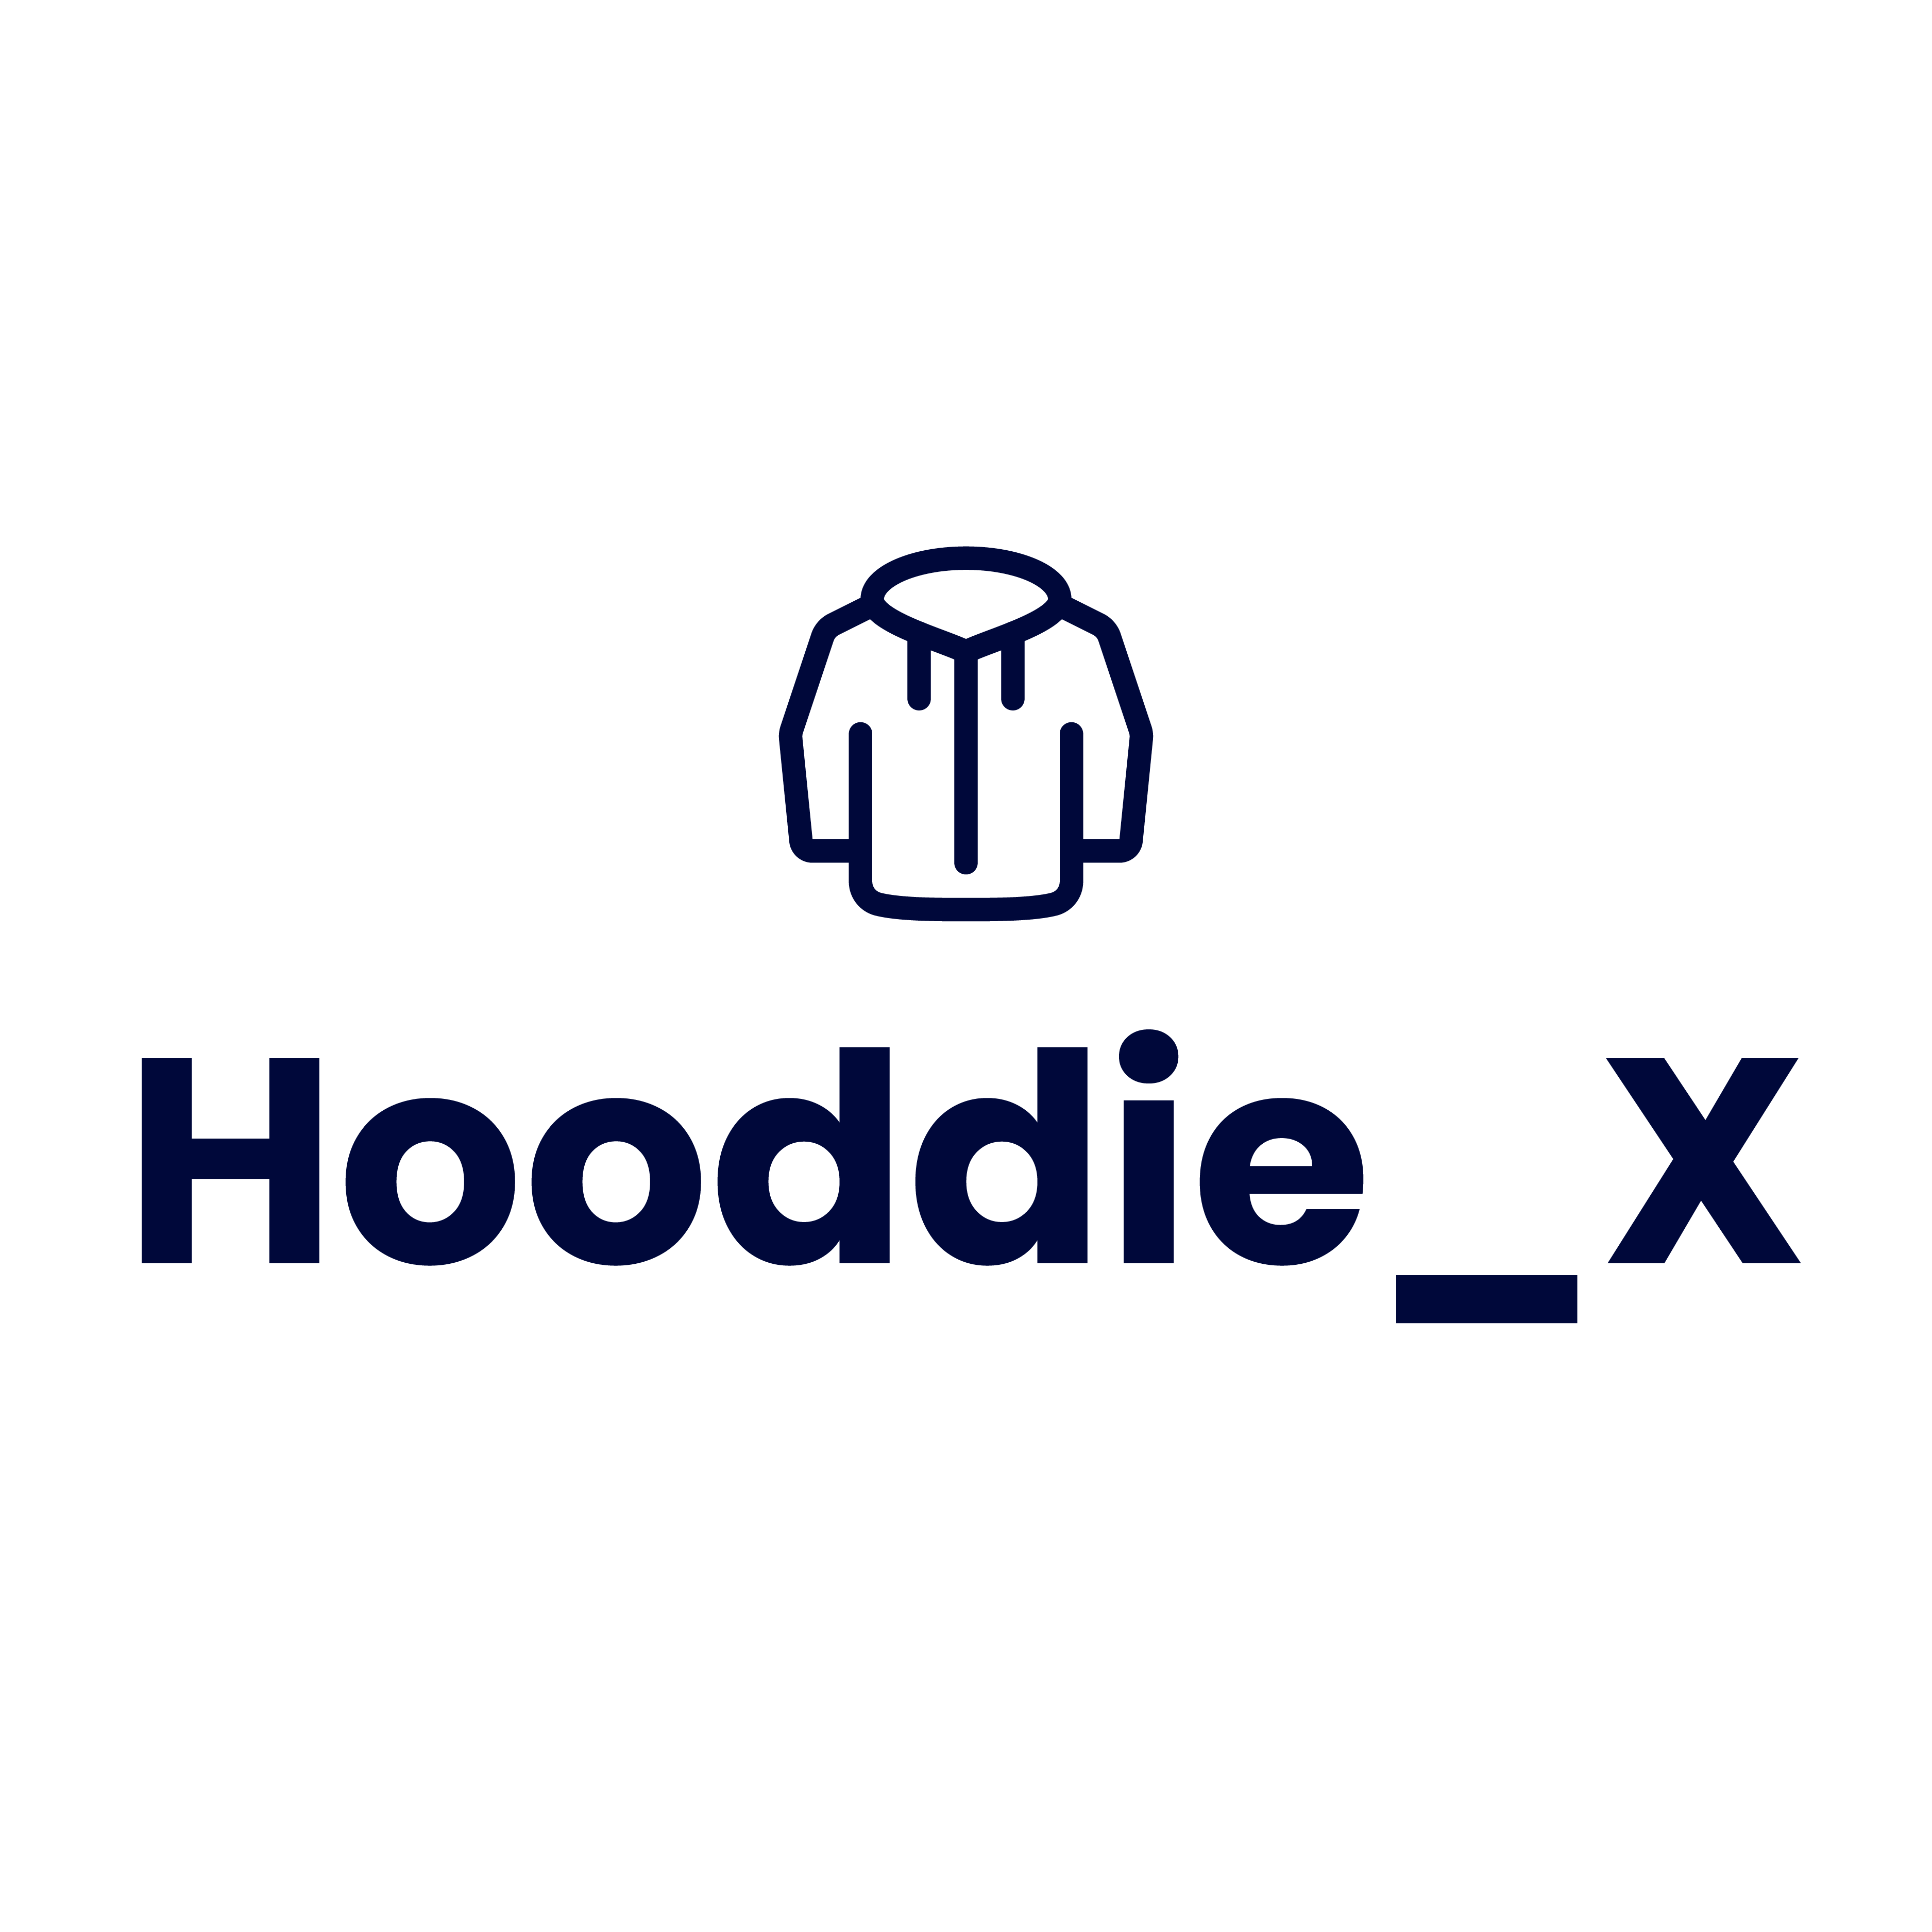 Hooddie_X